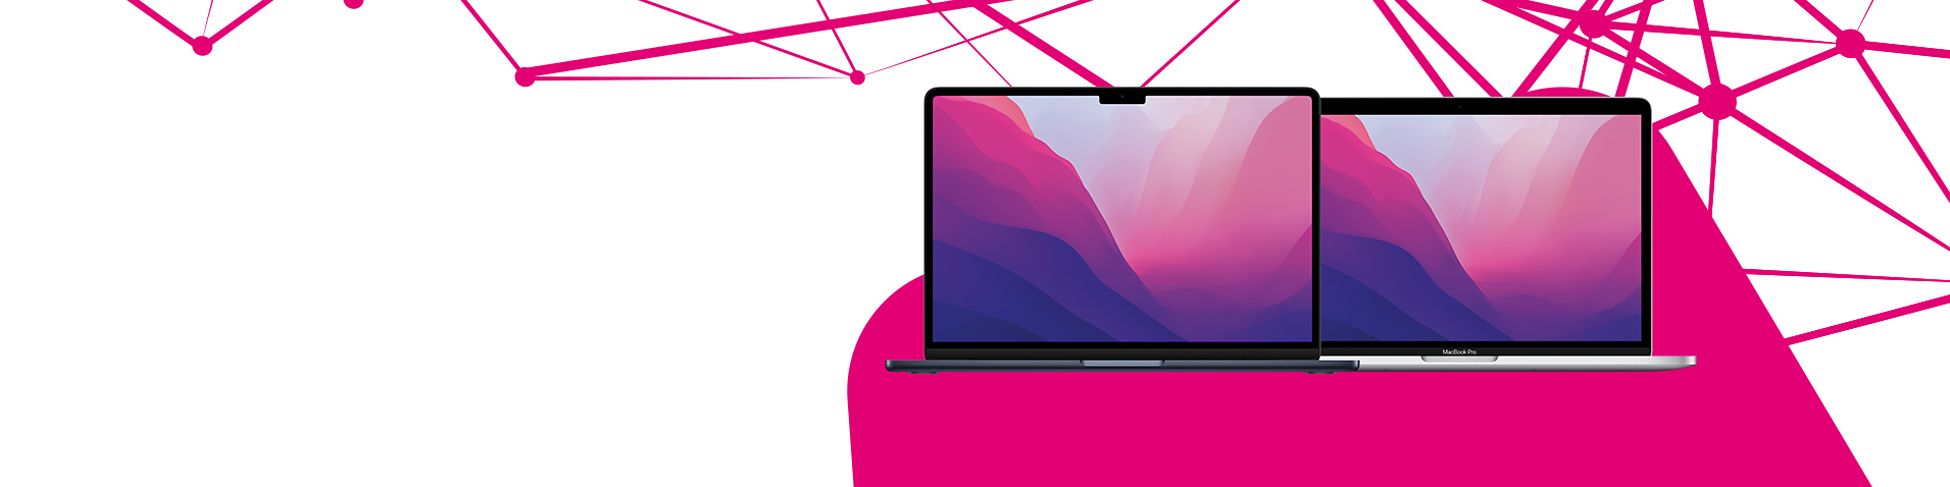 Produktabbildung MacBook Air und MacBook Pro von Apple